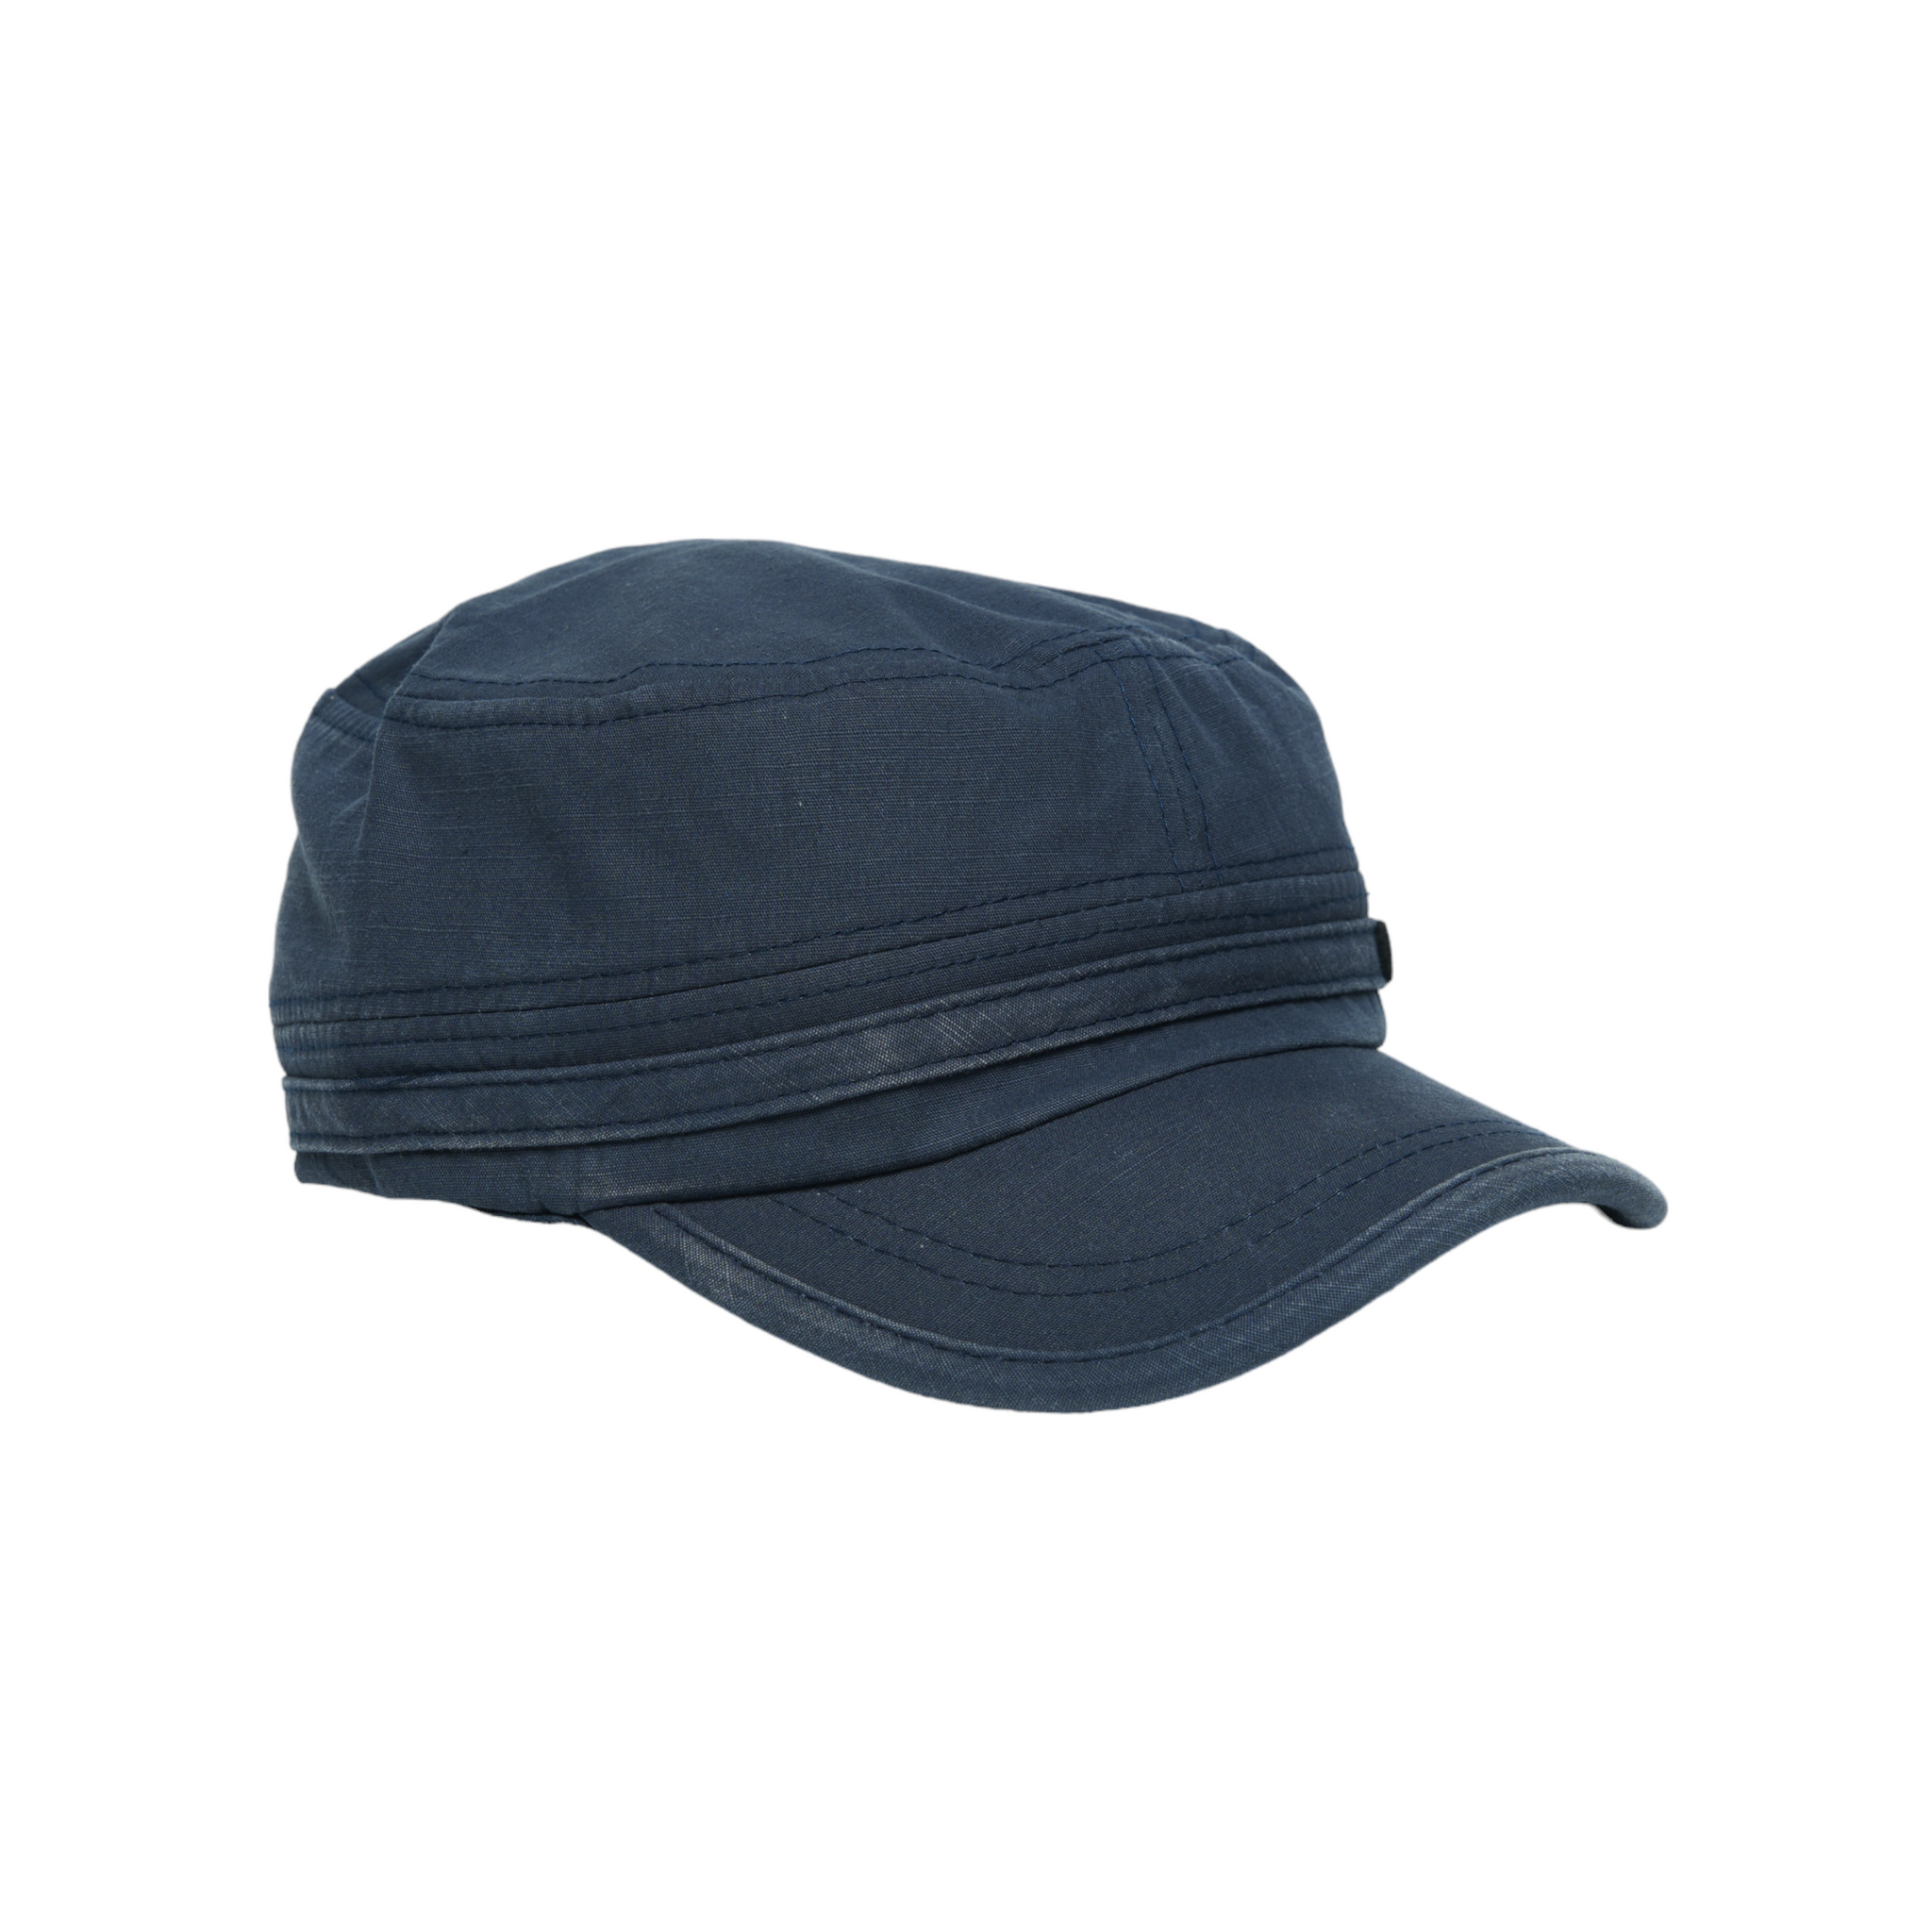 Chokore Classic Flat Top Cap with Curved Brim (Blue)